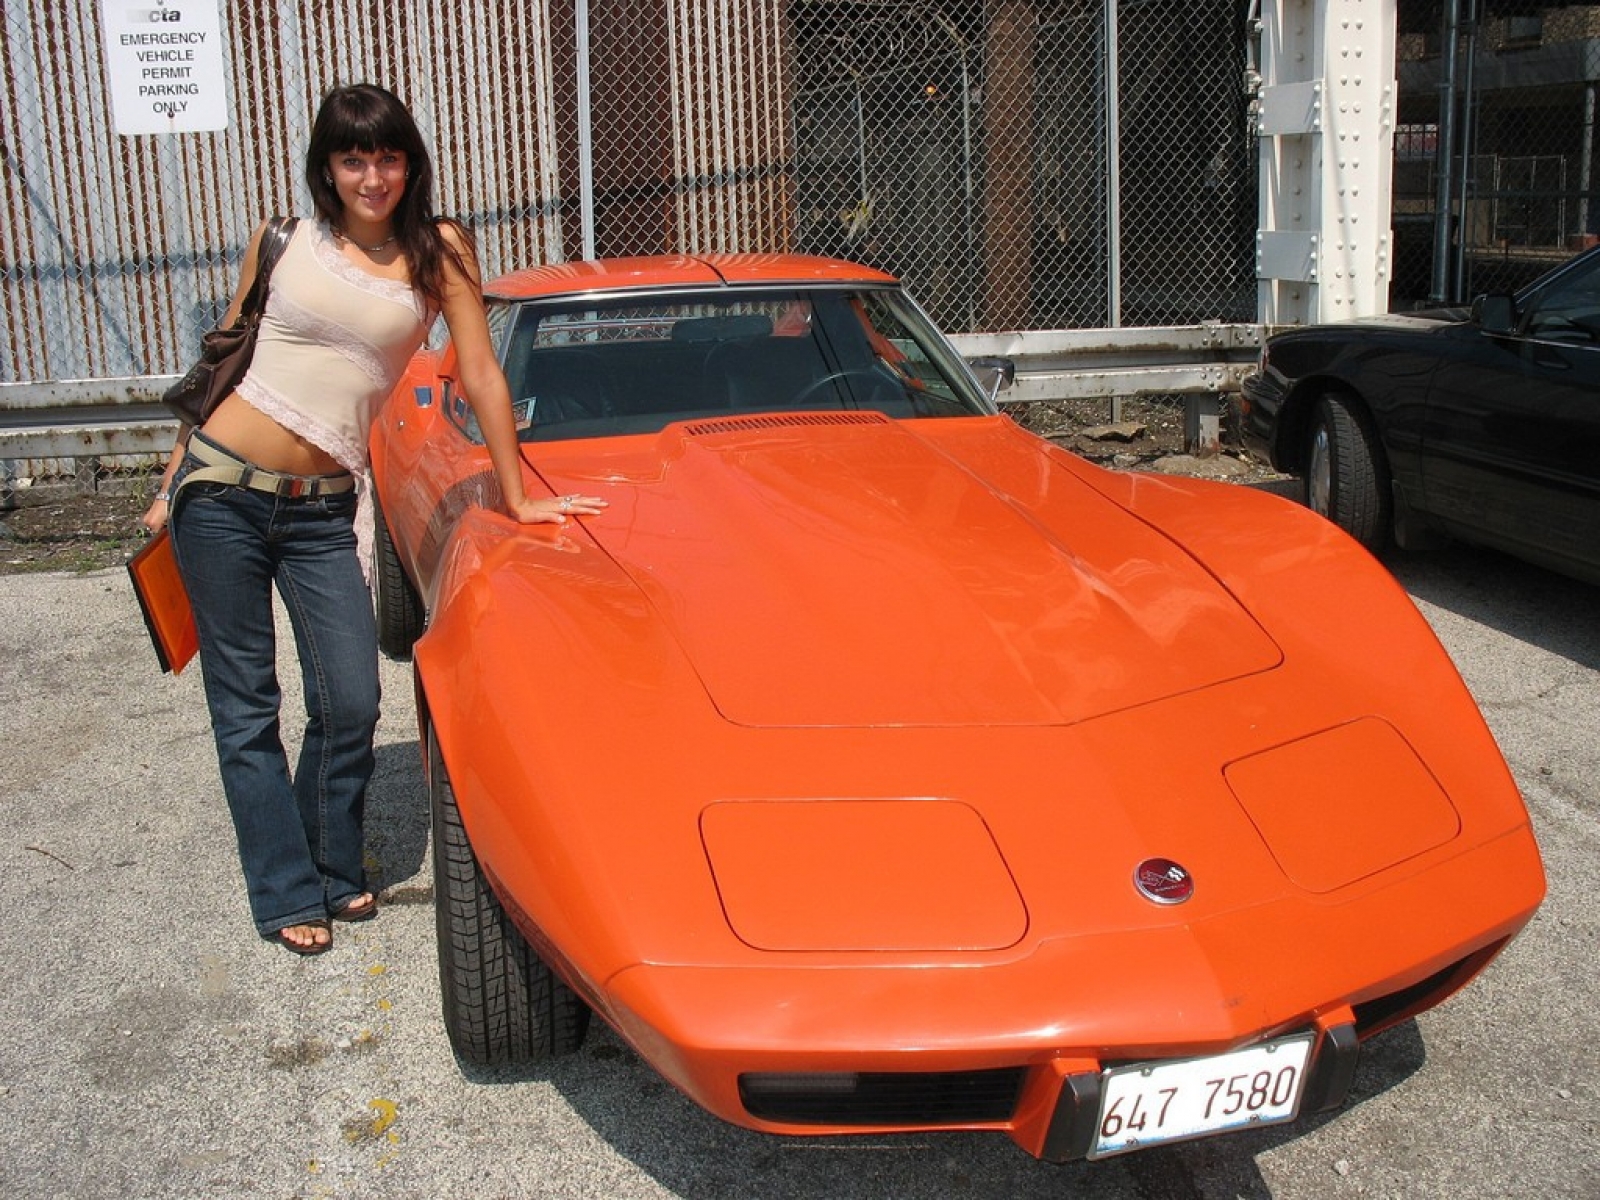 Corvette Girls With Cars Wallpaper